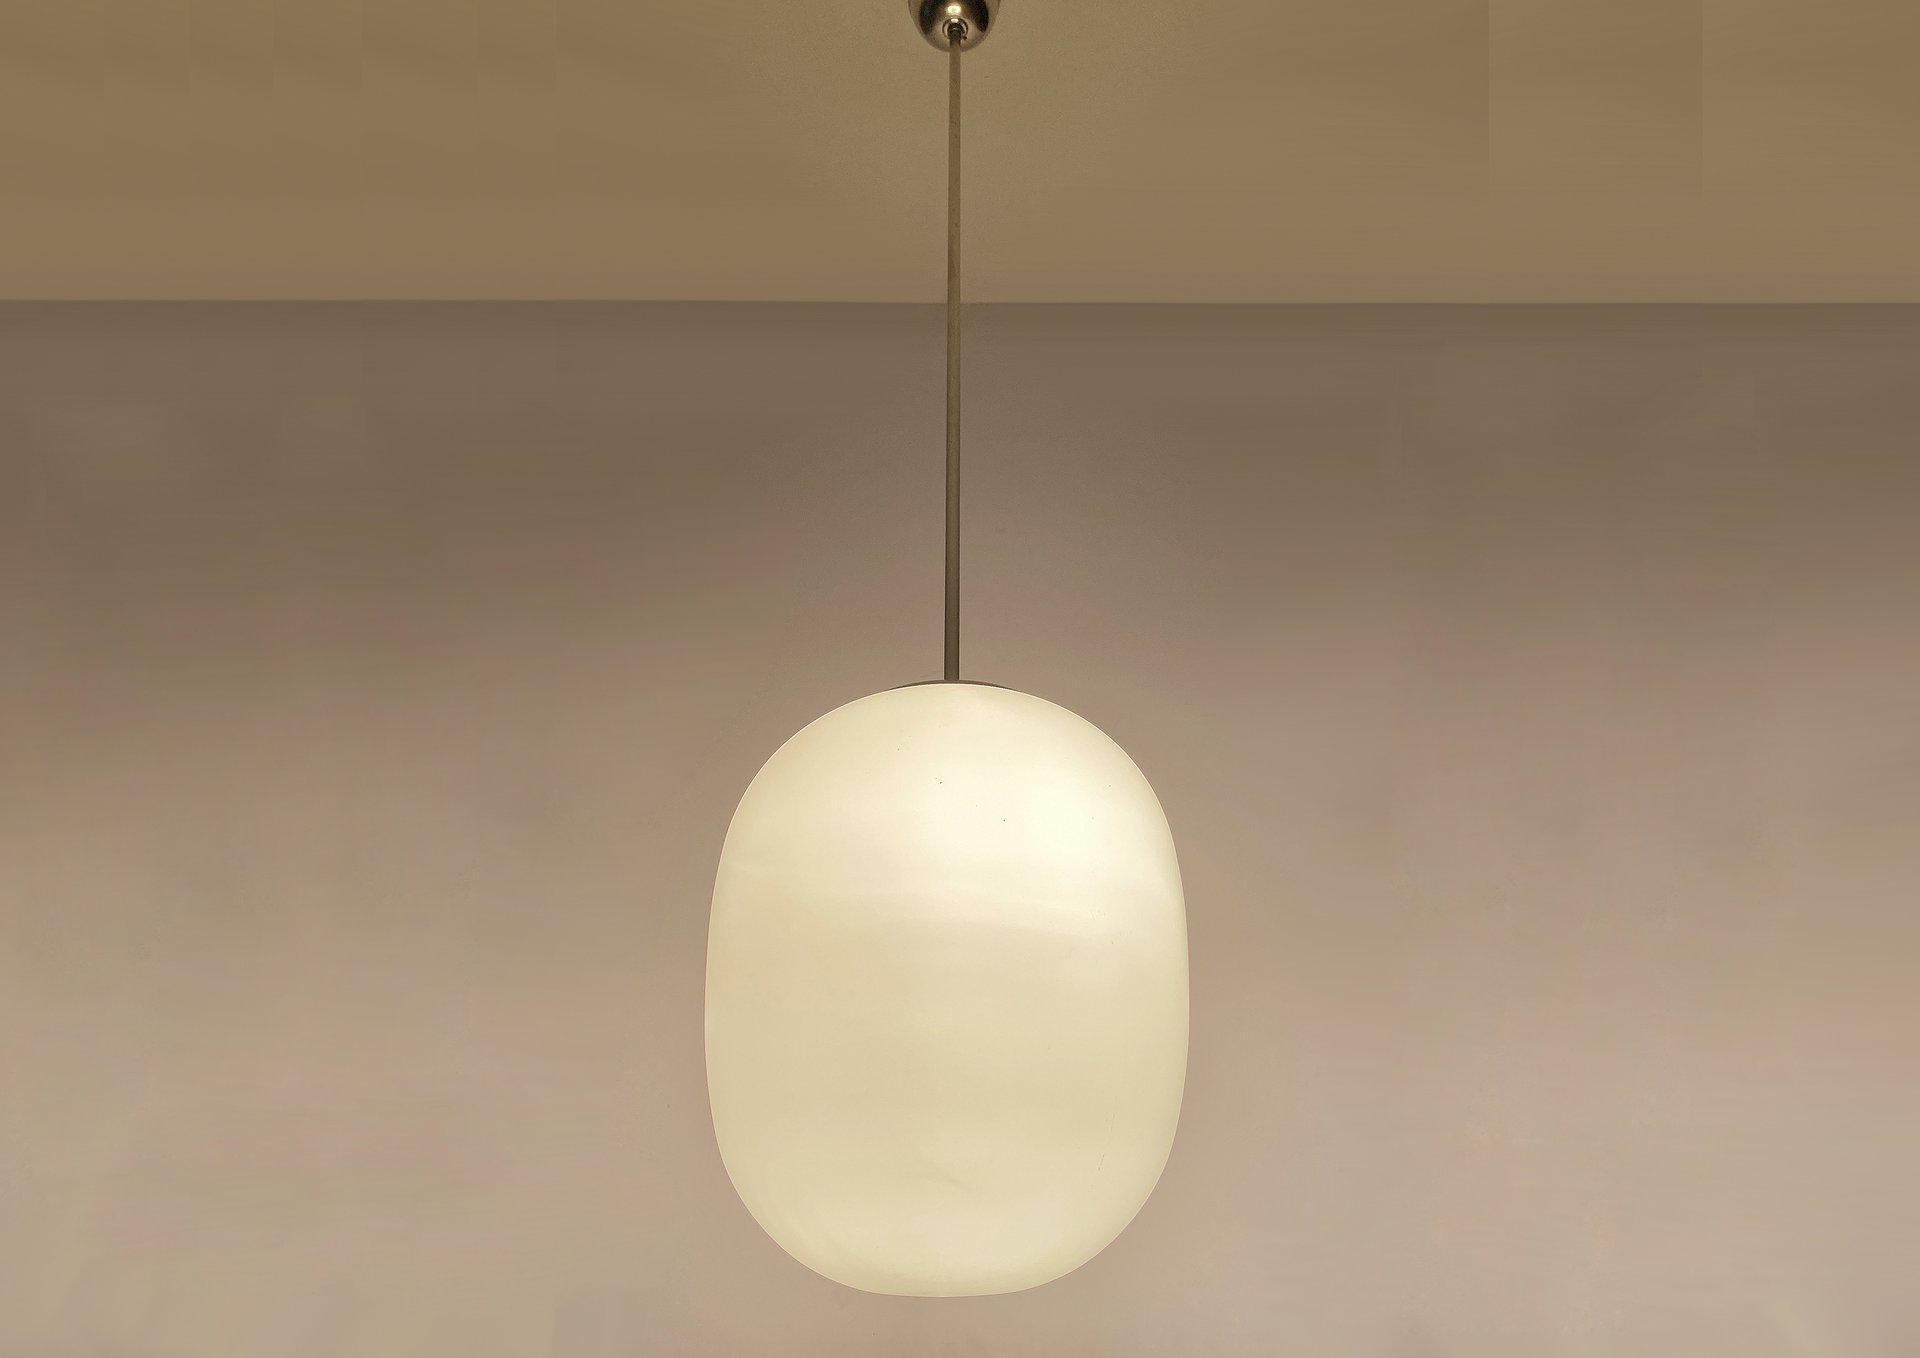 Mooie vrouw Vernederen Doen Art Deco Bauhaus Glas hanglamp | € 385 | Whoppah